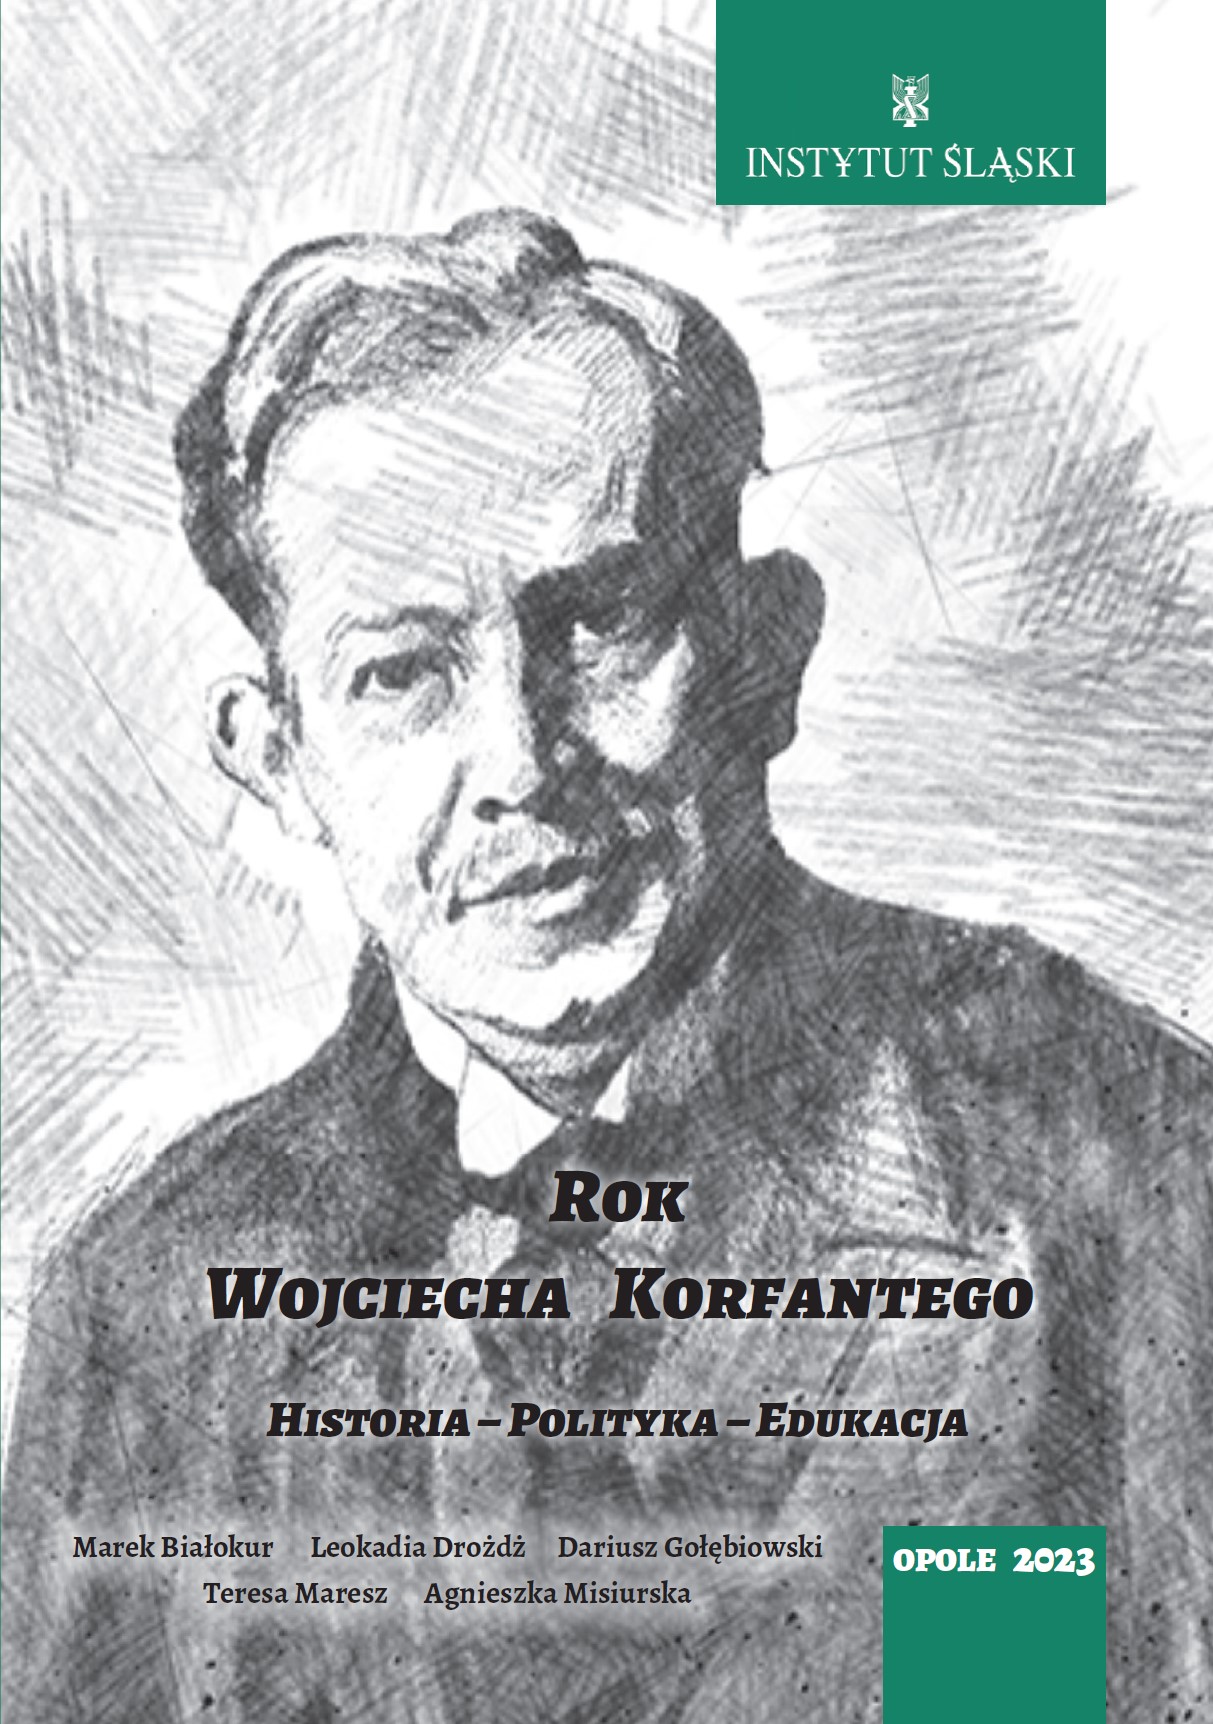 Okładka publikacji o Roku Wojciecha Korfantego